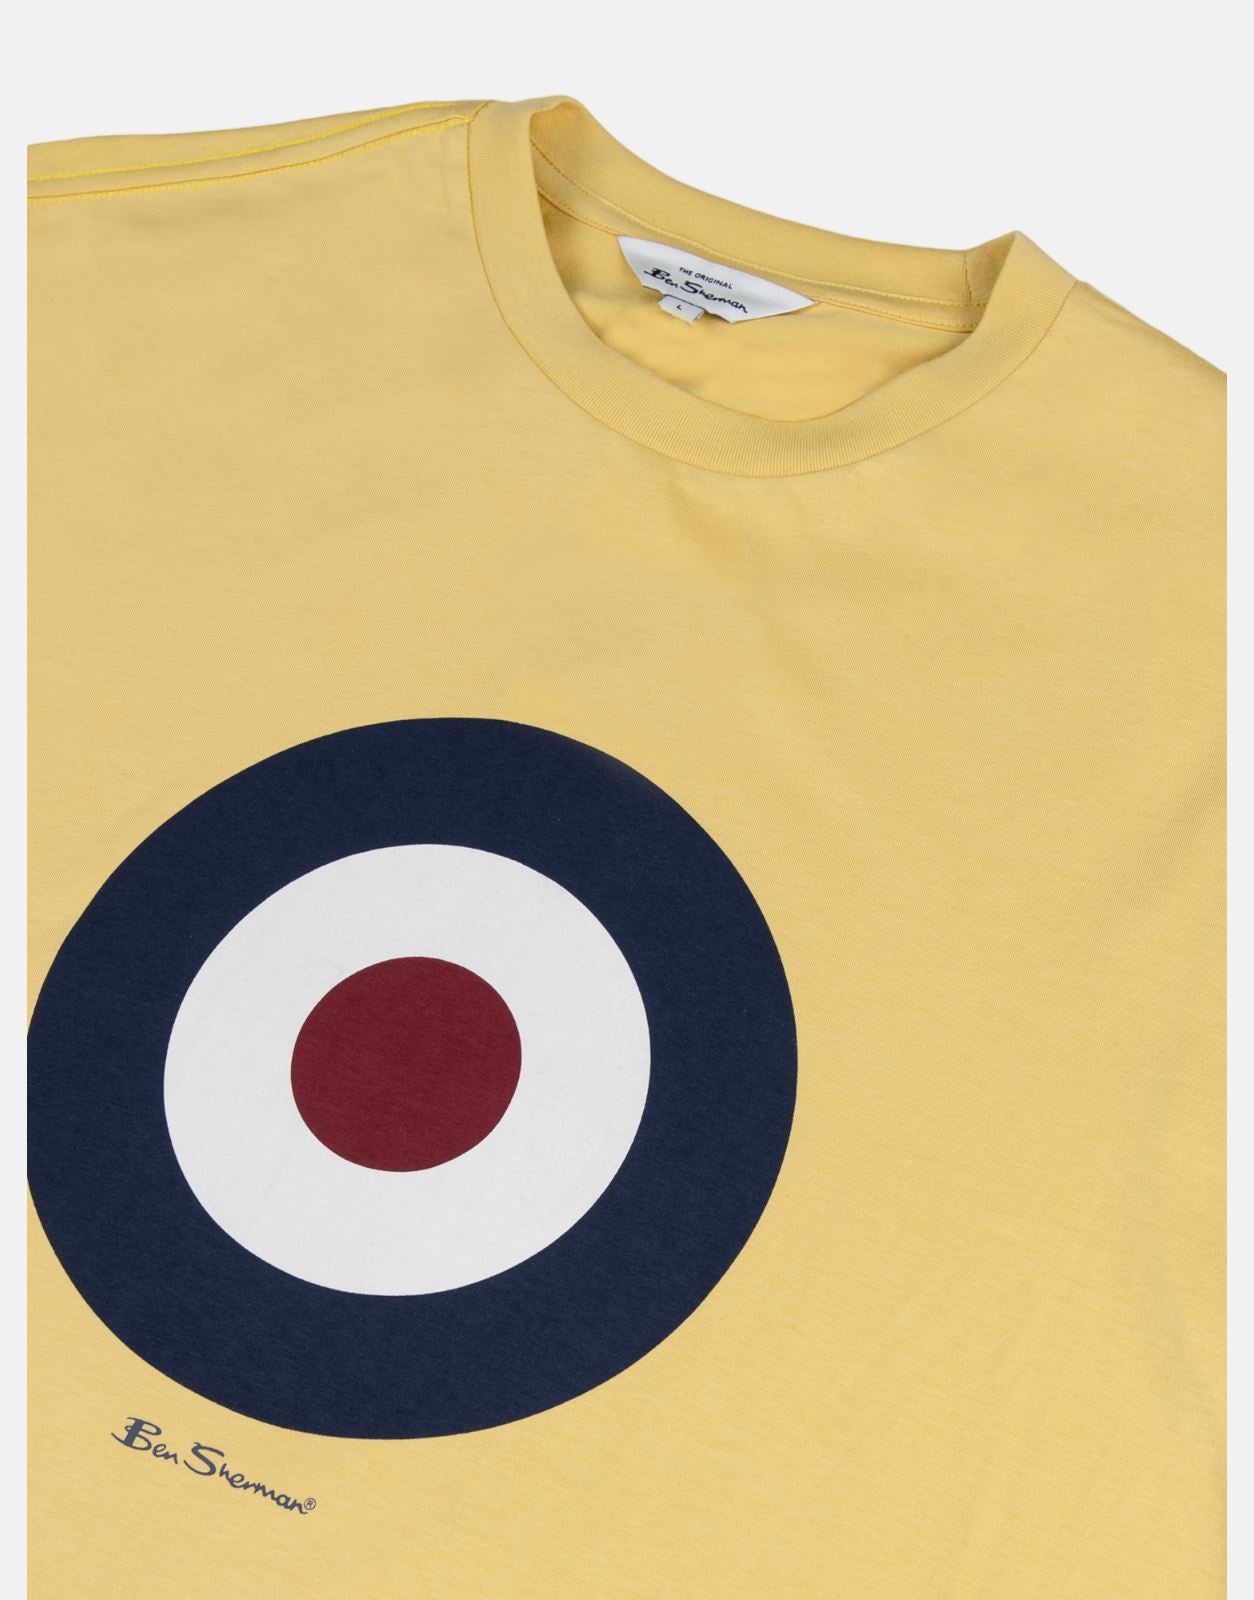 Ben Sherman Target Yellow T-Shirt - Subwear